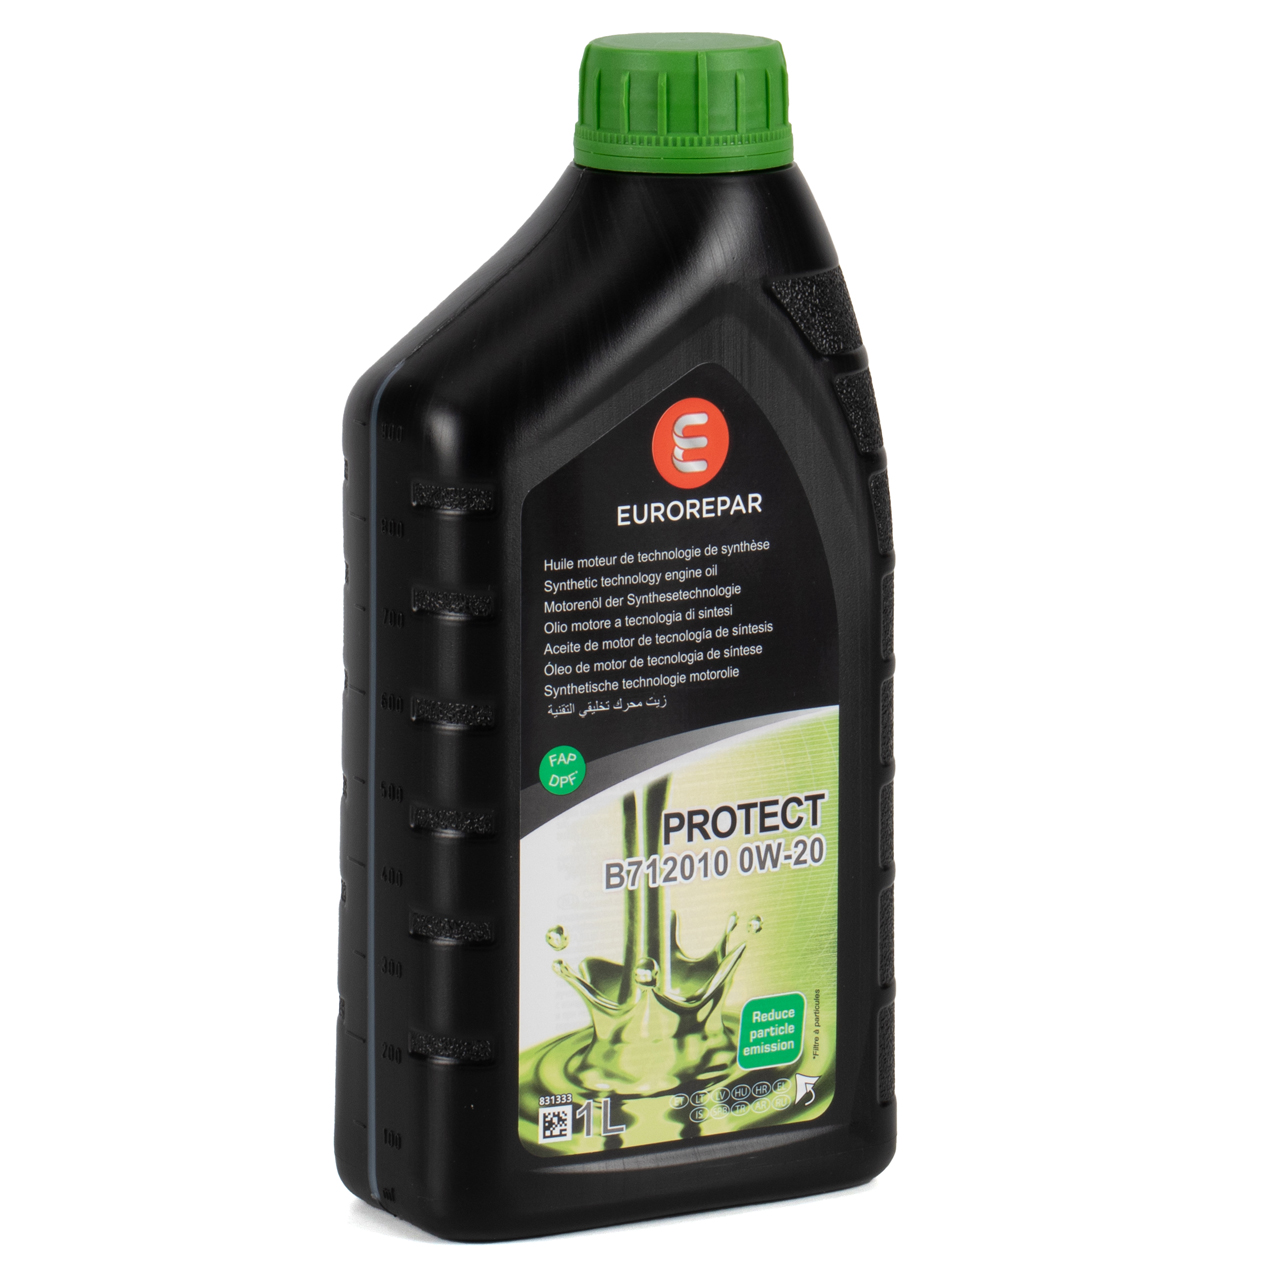 Eurorepar lanza el nuevo Protect 0W-20 y completa su gama de lubricantes –  MUNDI-PETROL